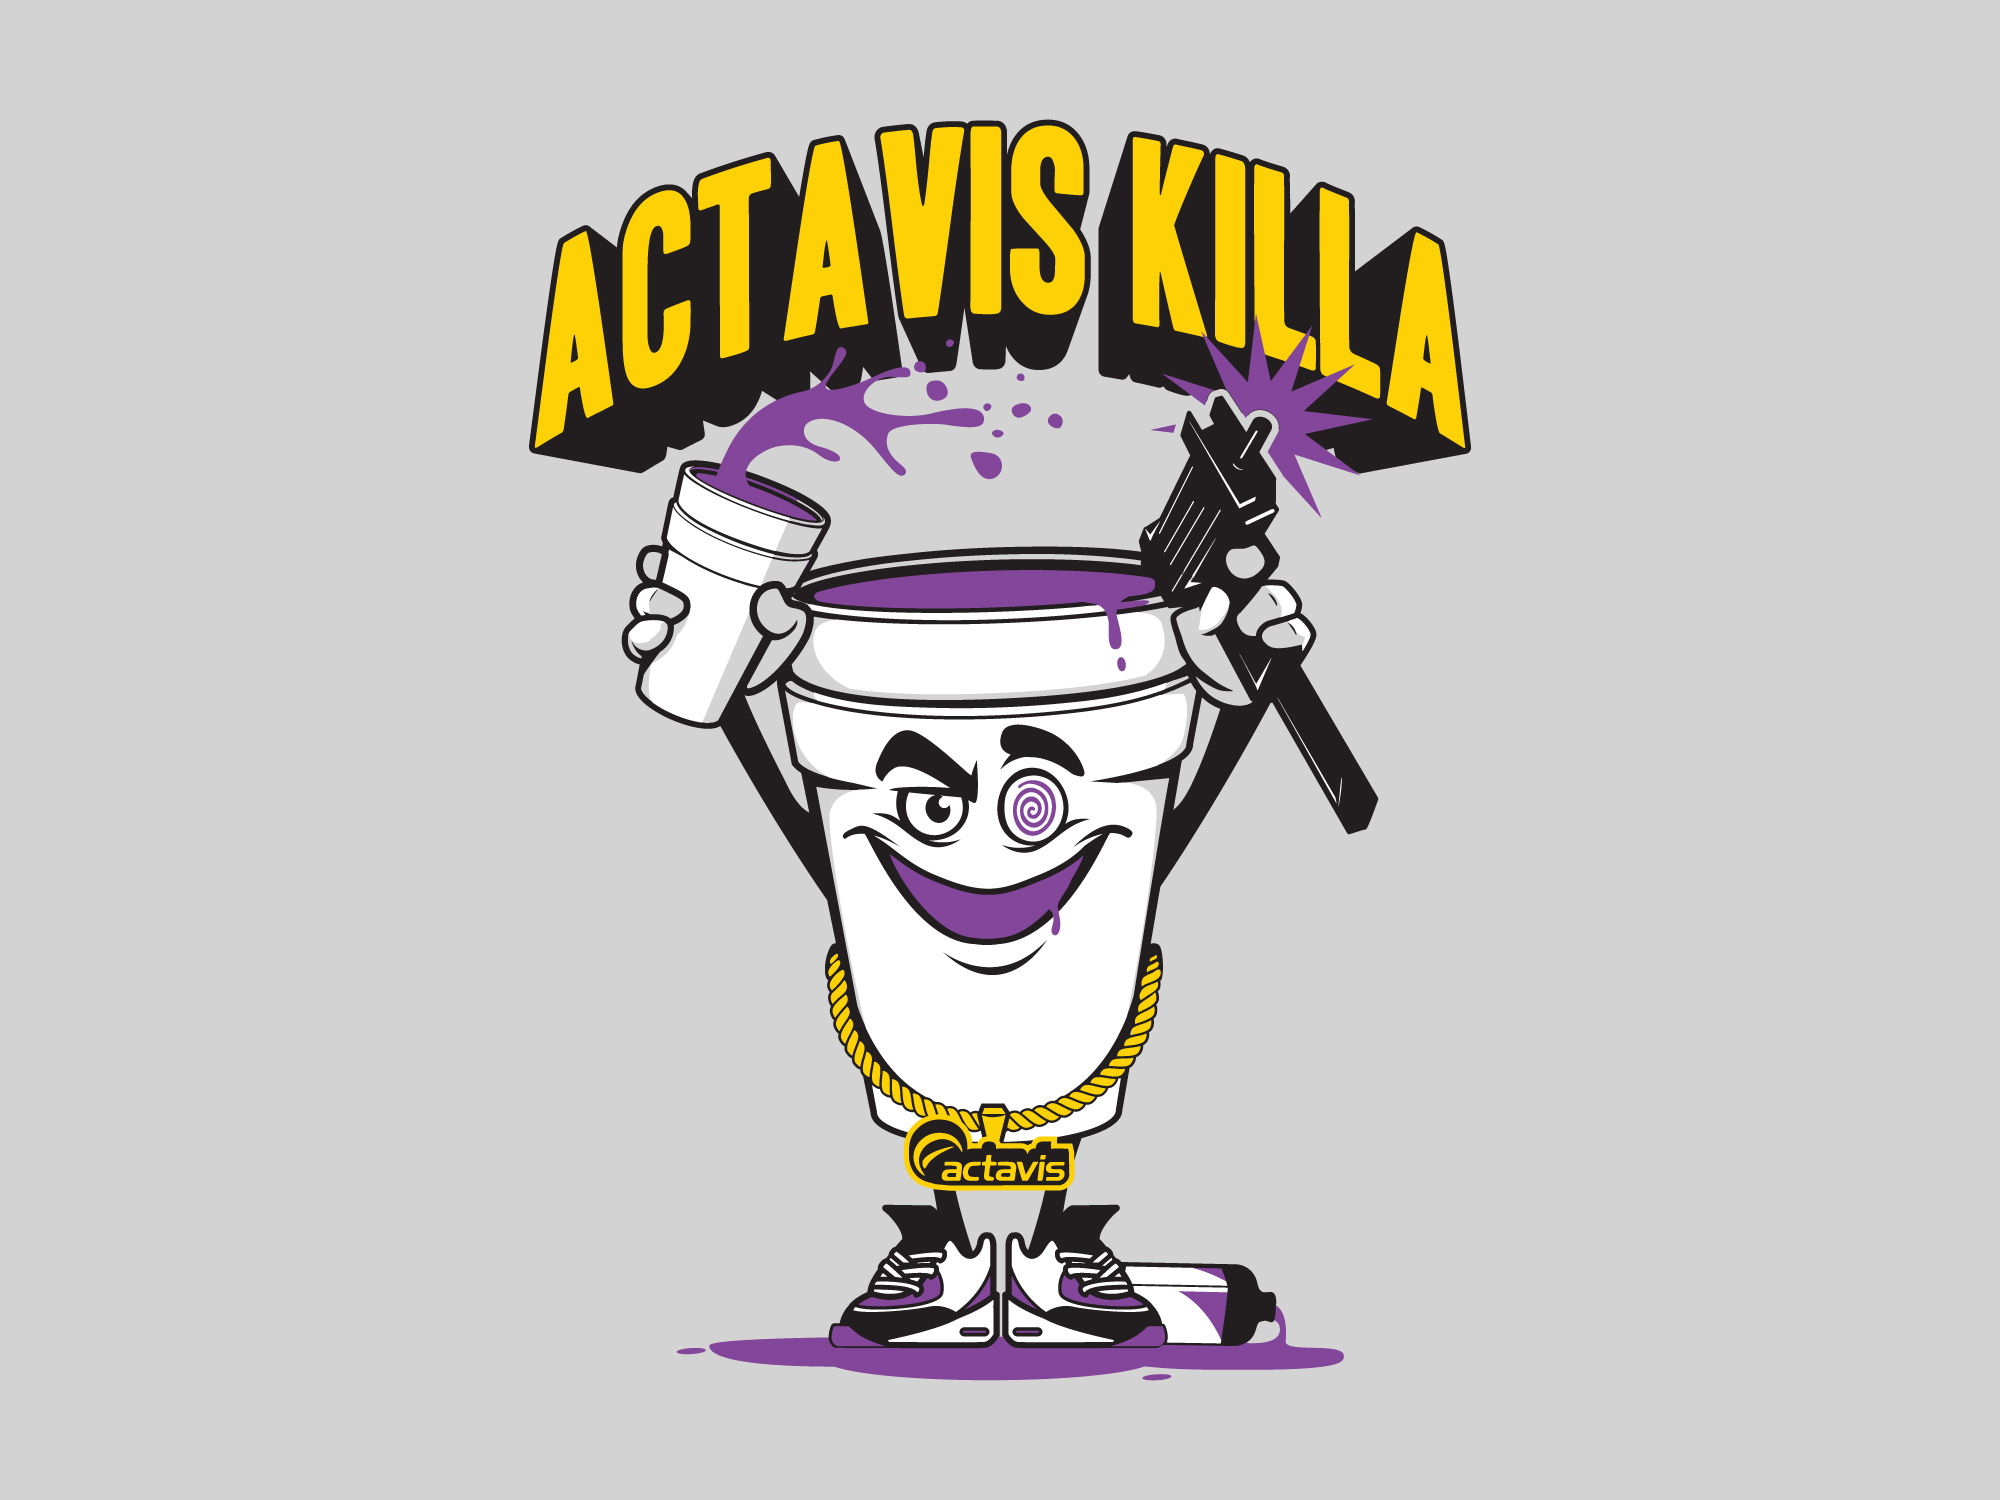 Actavis Killa